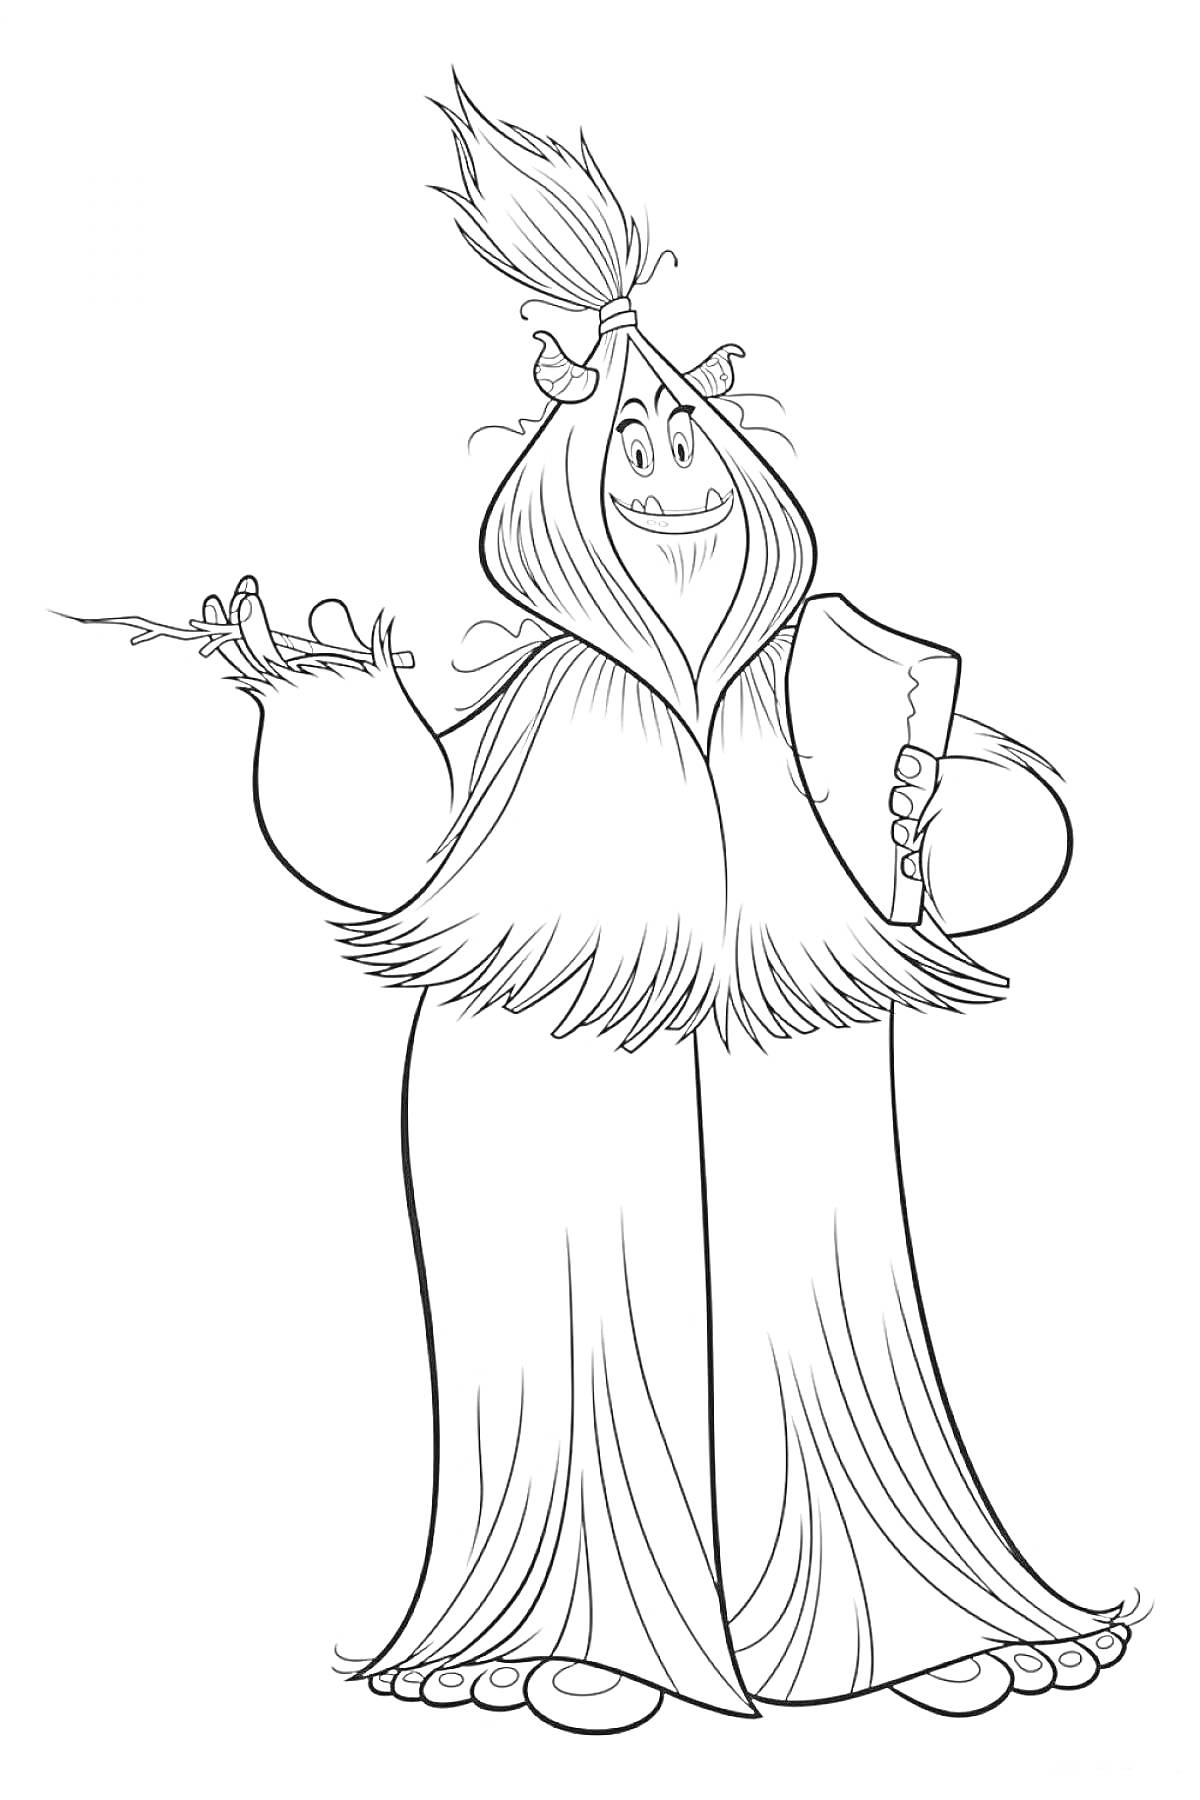 Раскраска Персонаж Смолфут с длинной шерстью, стоящий в полный рост